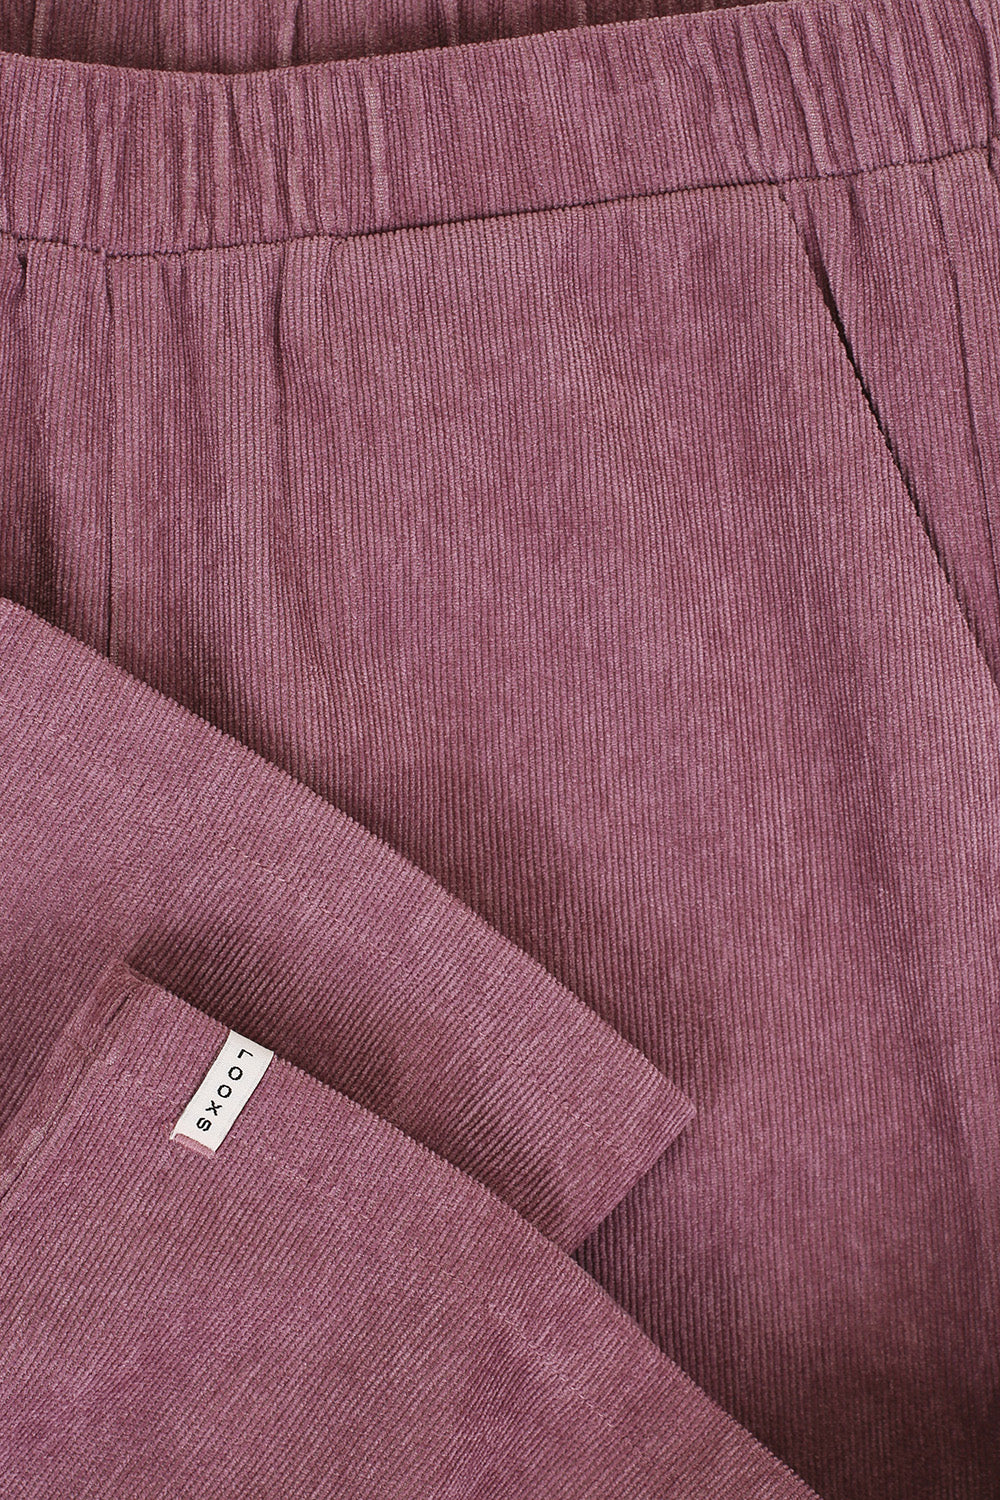 Meisjes Corduroy Wideleg Pants van LOOXS Little in de kleur Mauve Blush in maat 128.